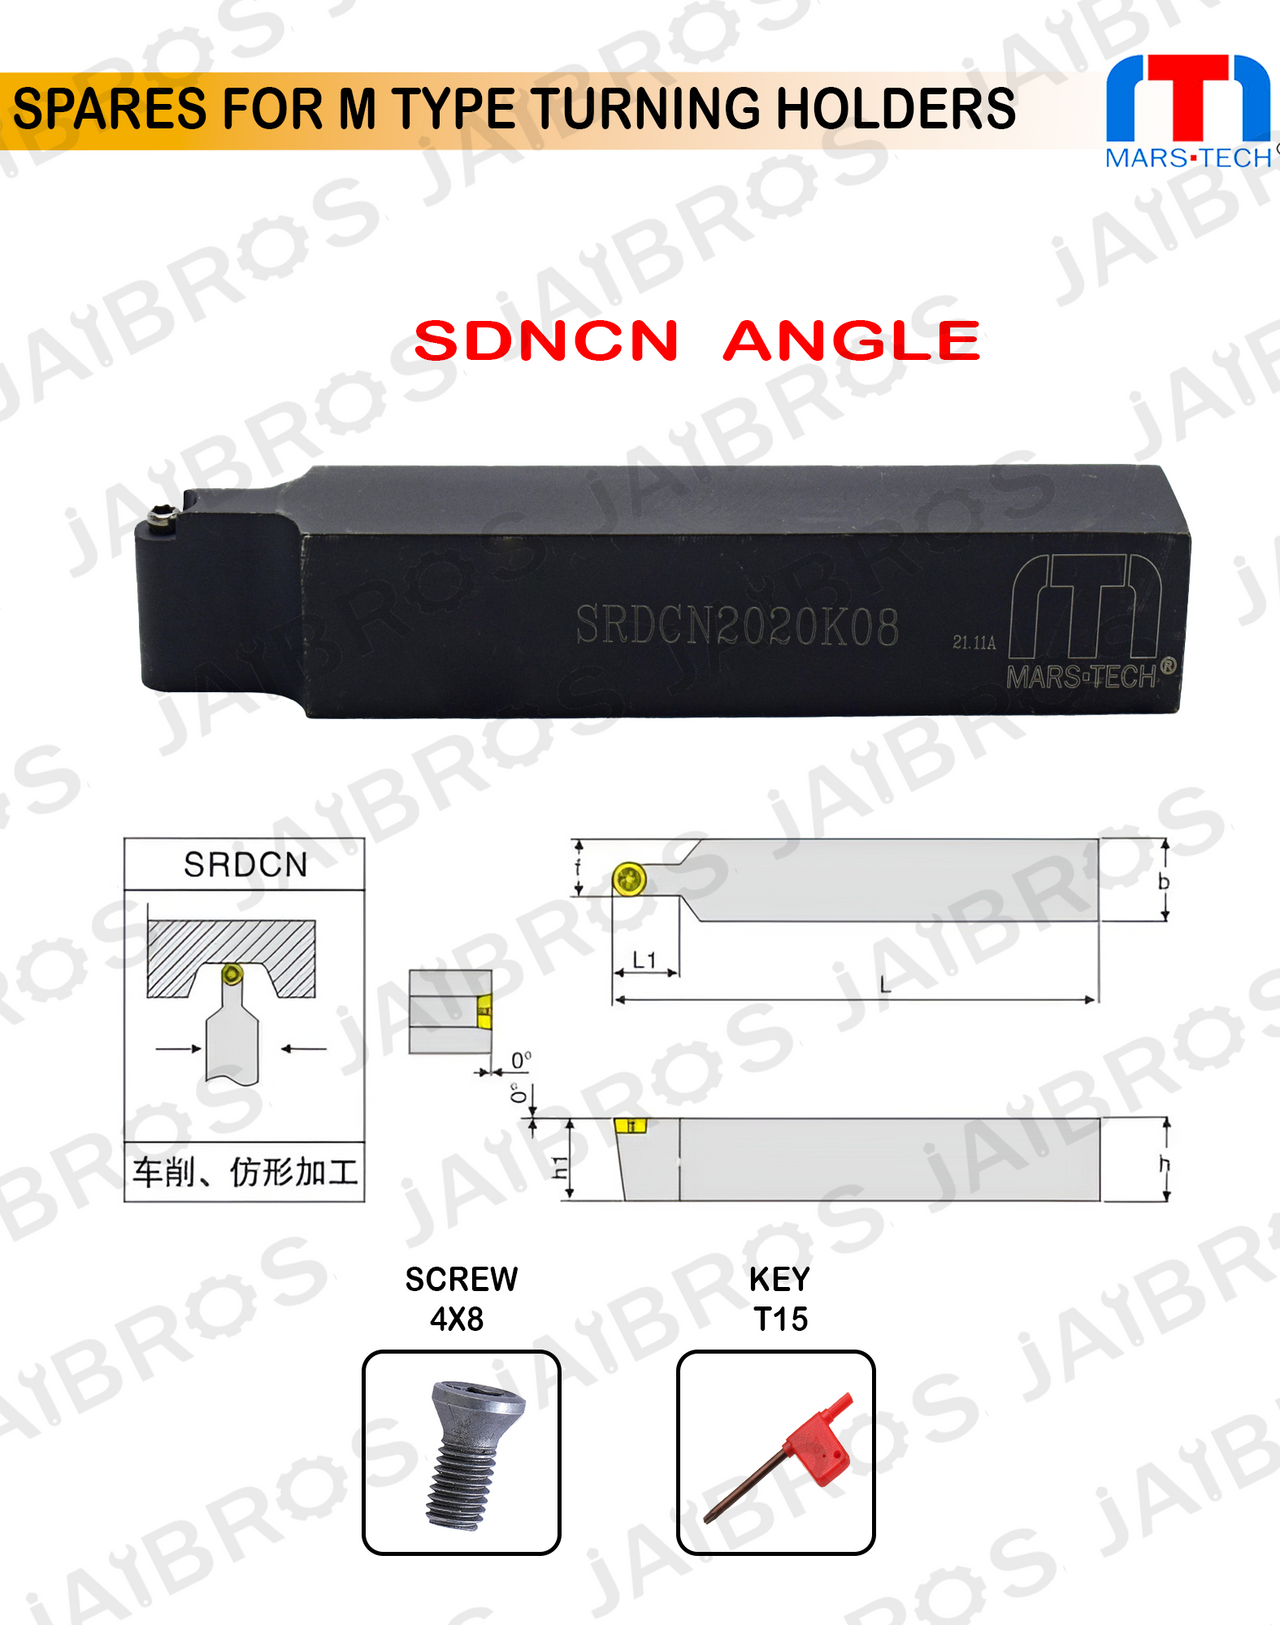 SRDCN 2020 RC1003 insert holder for turining radius pack of 1